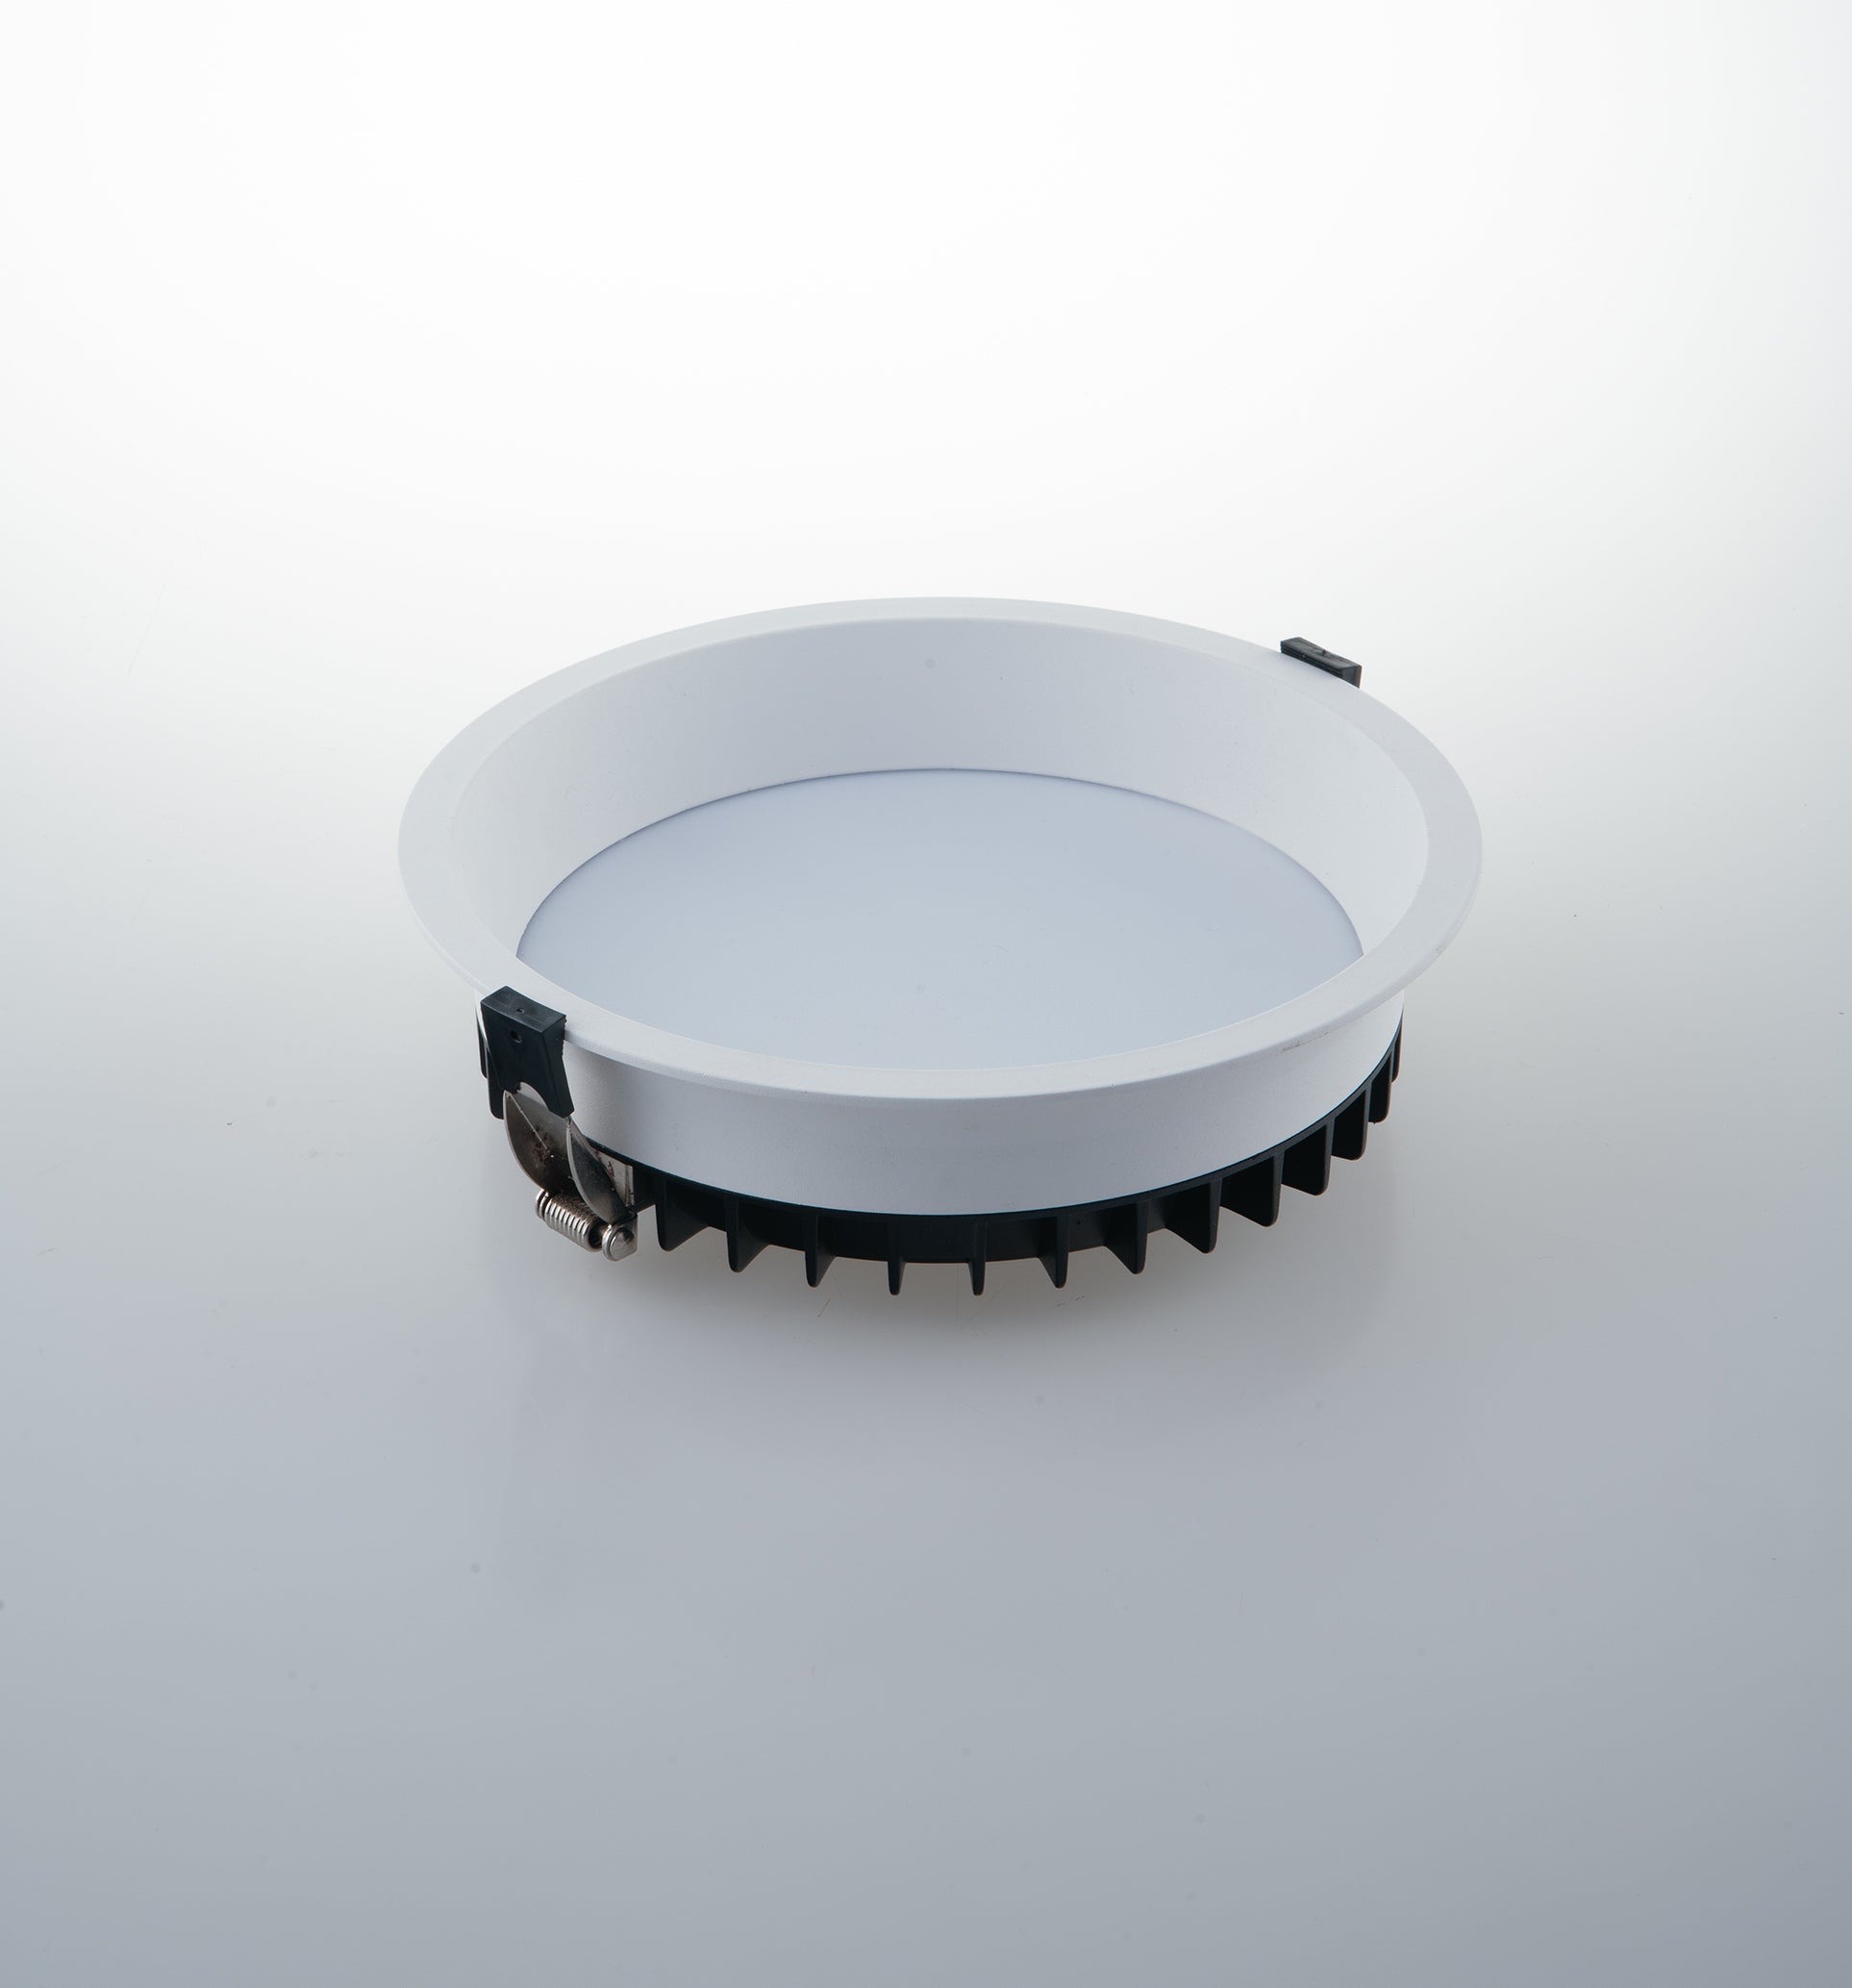 Luminaria de empotrar LED XANTO LED redonda en color blanco satinado de fundición inyectada de aluminio